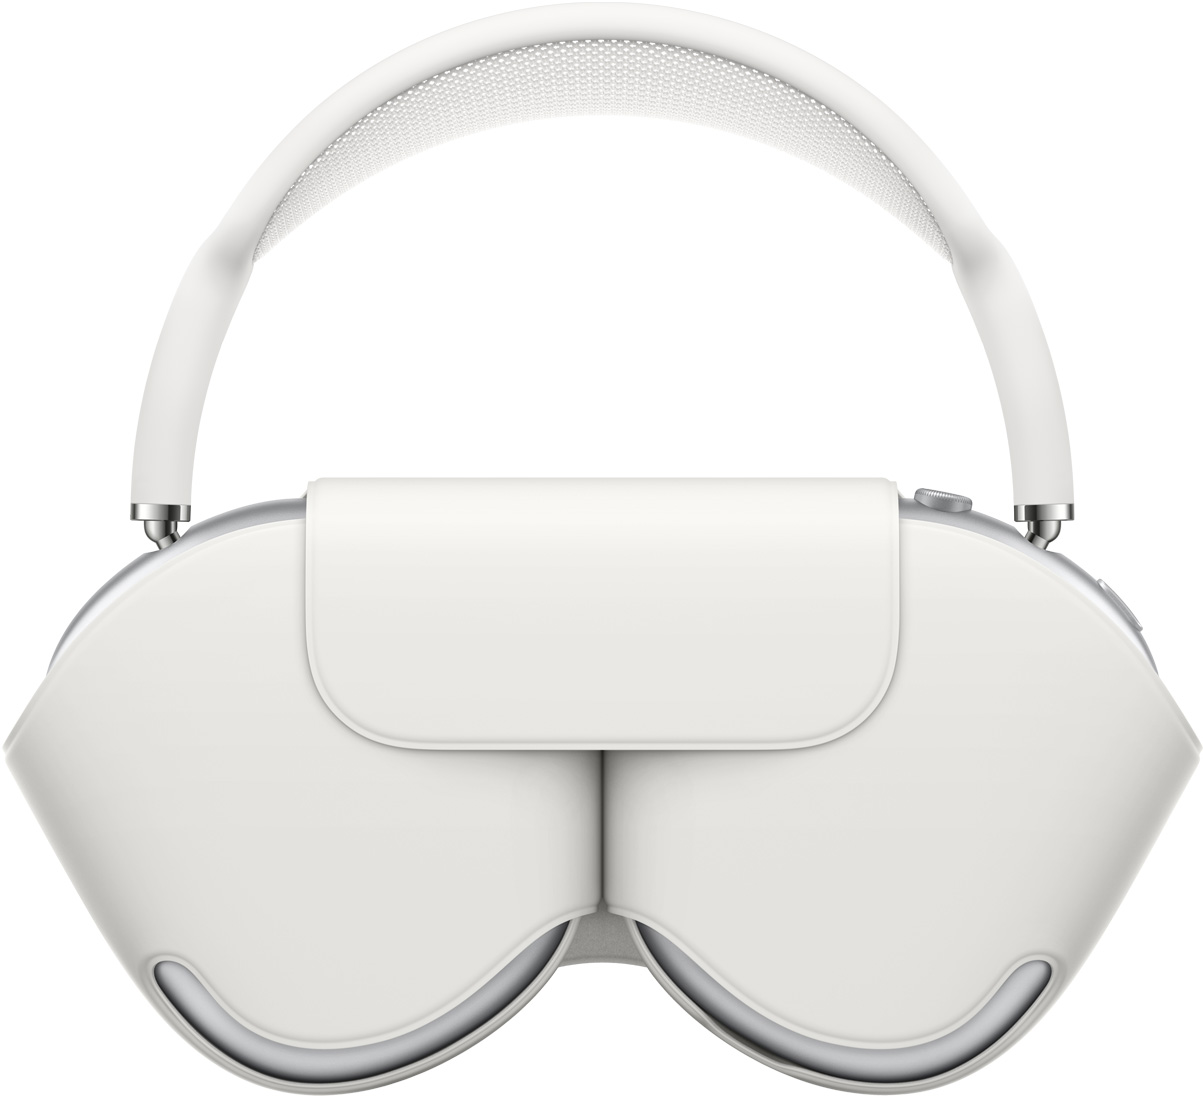 AirPods Max i sølv med matchende smartetui som beskytter øreklokkene. Bøylen på AirPods Max stikker opp som et håndtak.